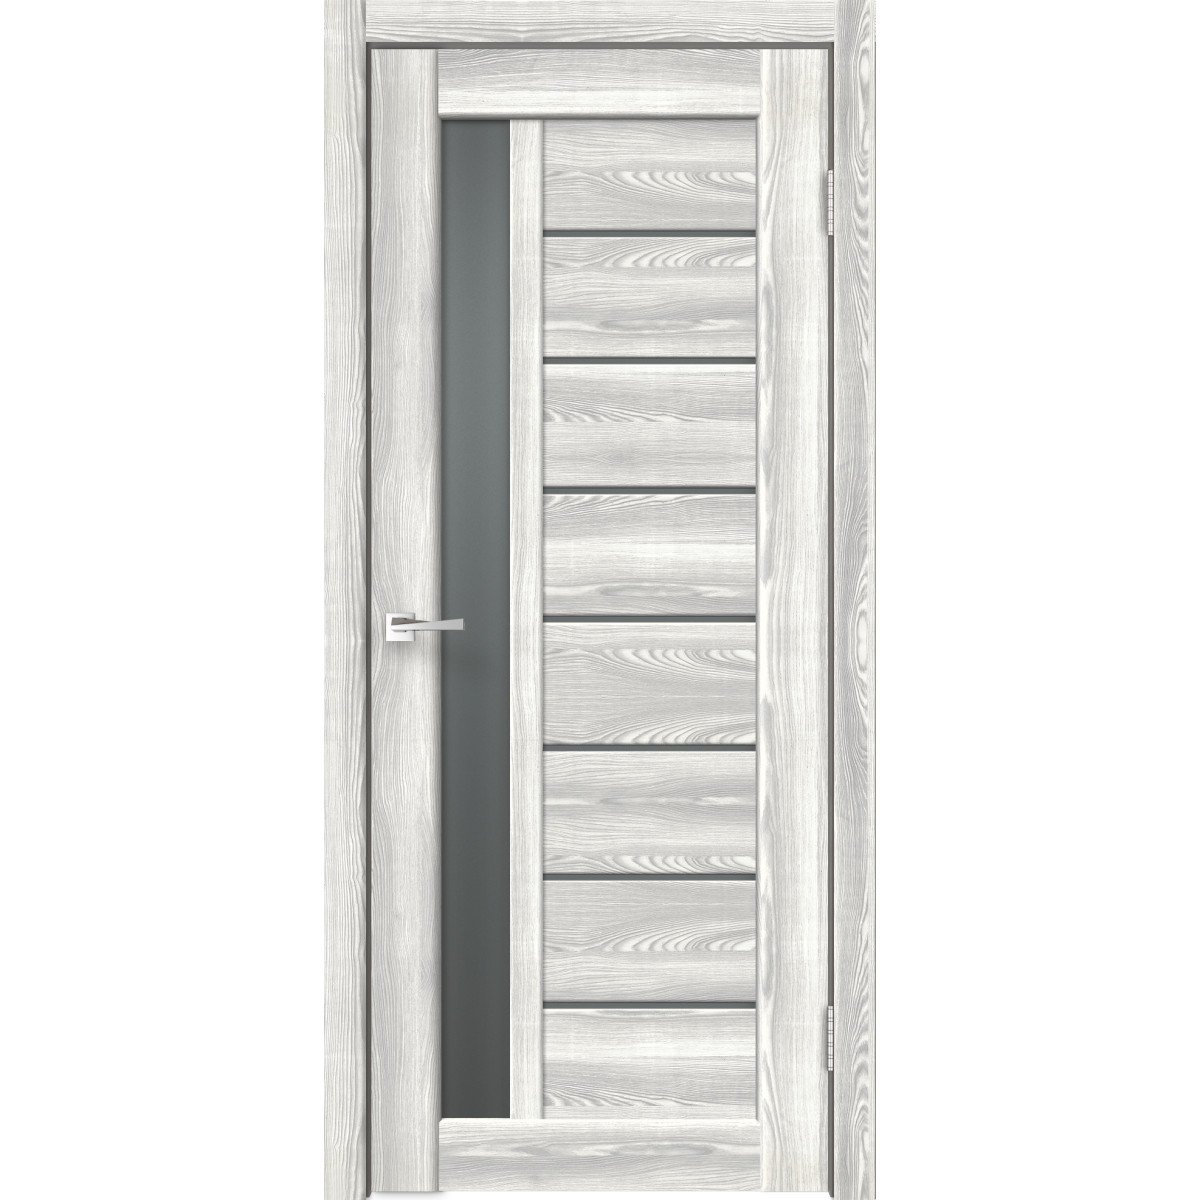 Дверь межкомнатная остеклённая Сиэтл 8 90х200 см с фурнитурой, ПВХ, цвет светлый клён